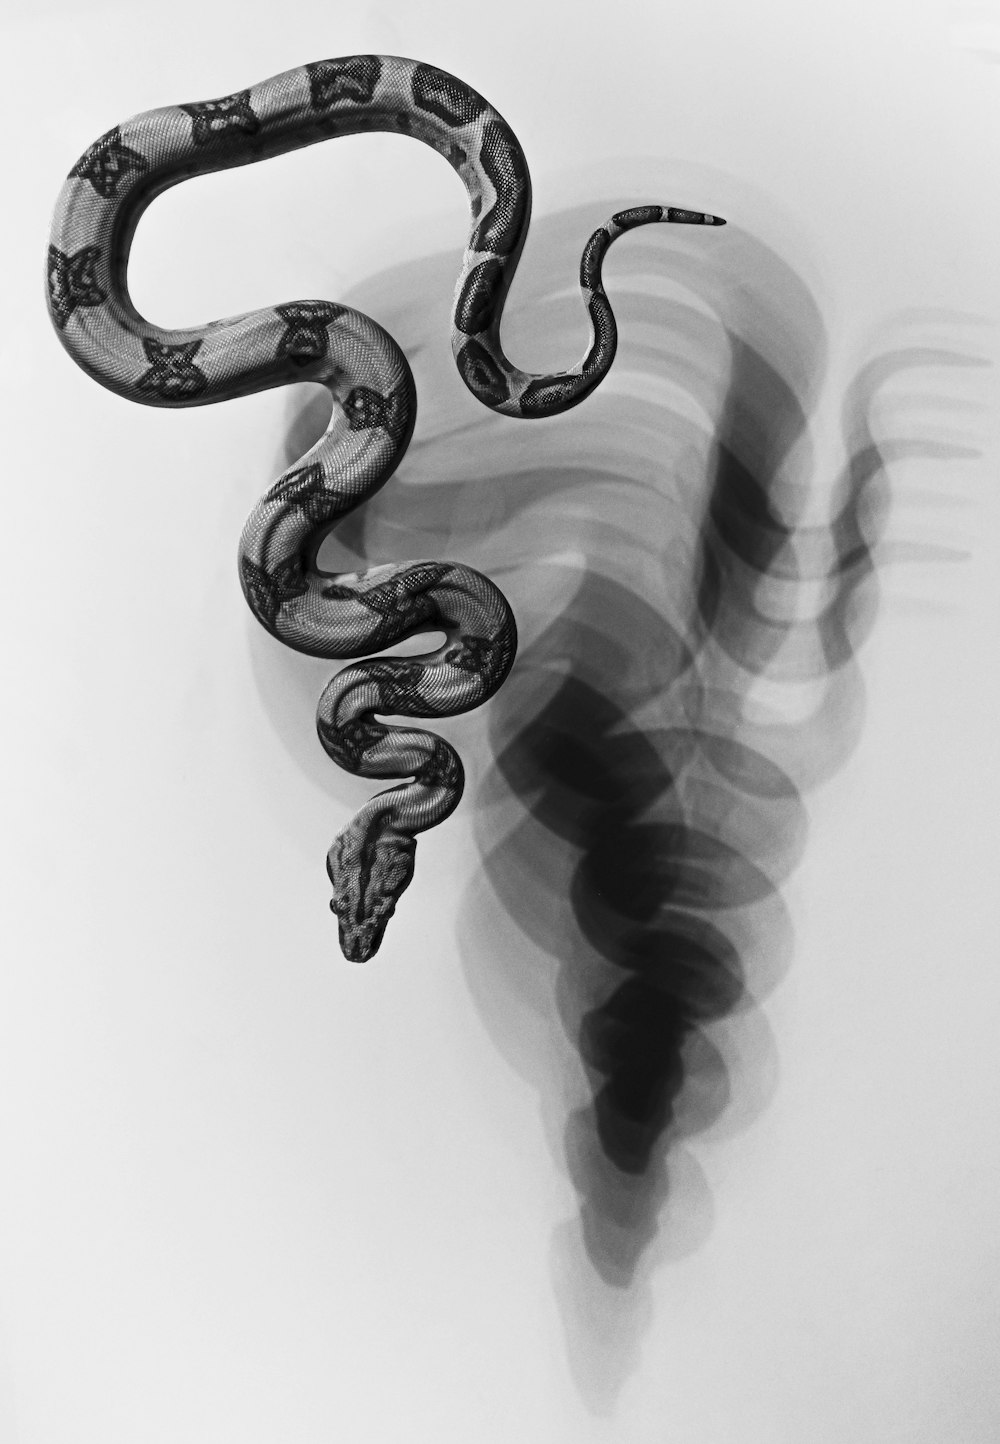 Una foto en blanco y negro de una serpiente